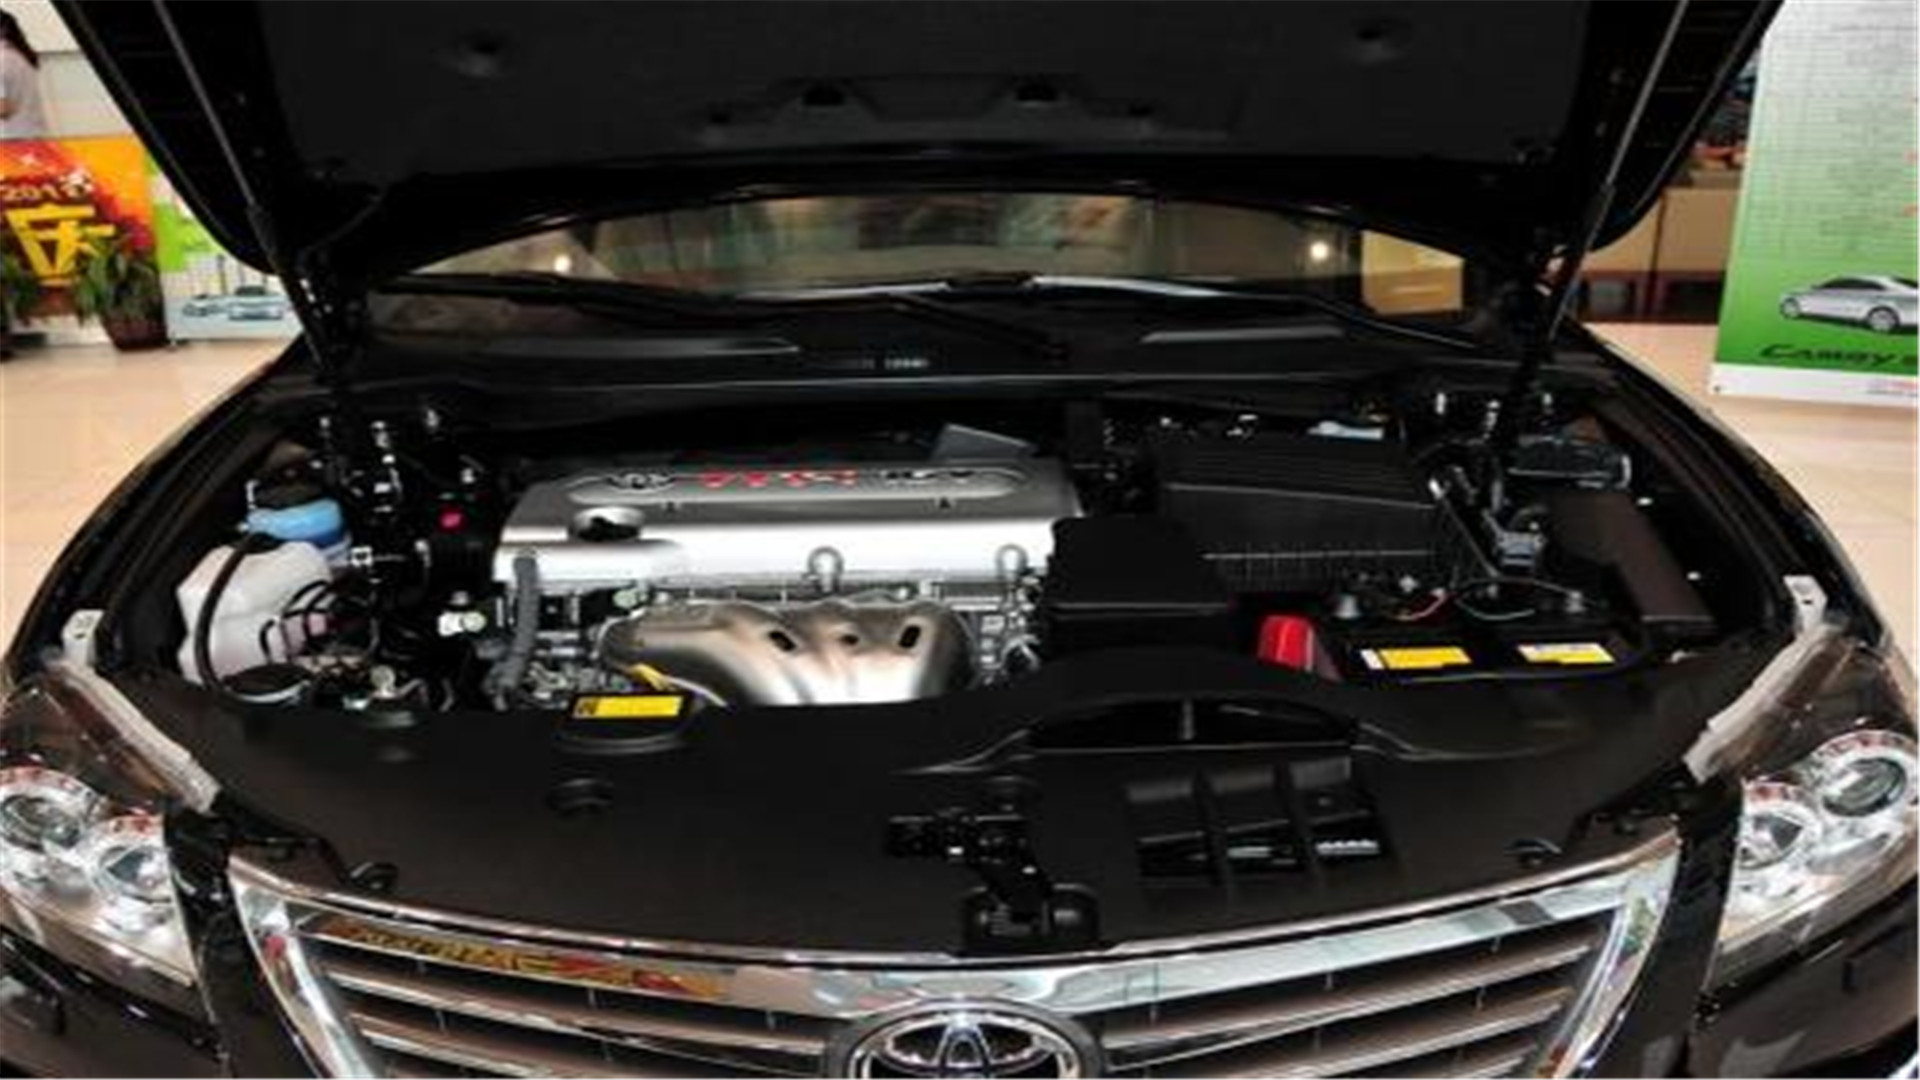 凯美瑞搭载20l丰田自然吸气发动机,动力均衡性能可靠,加速线性